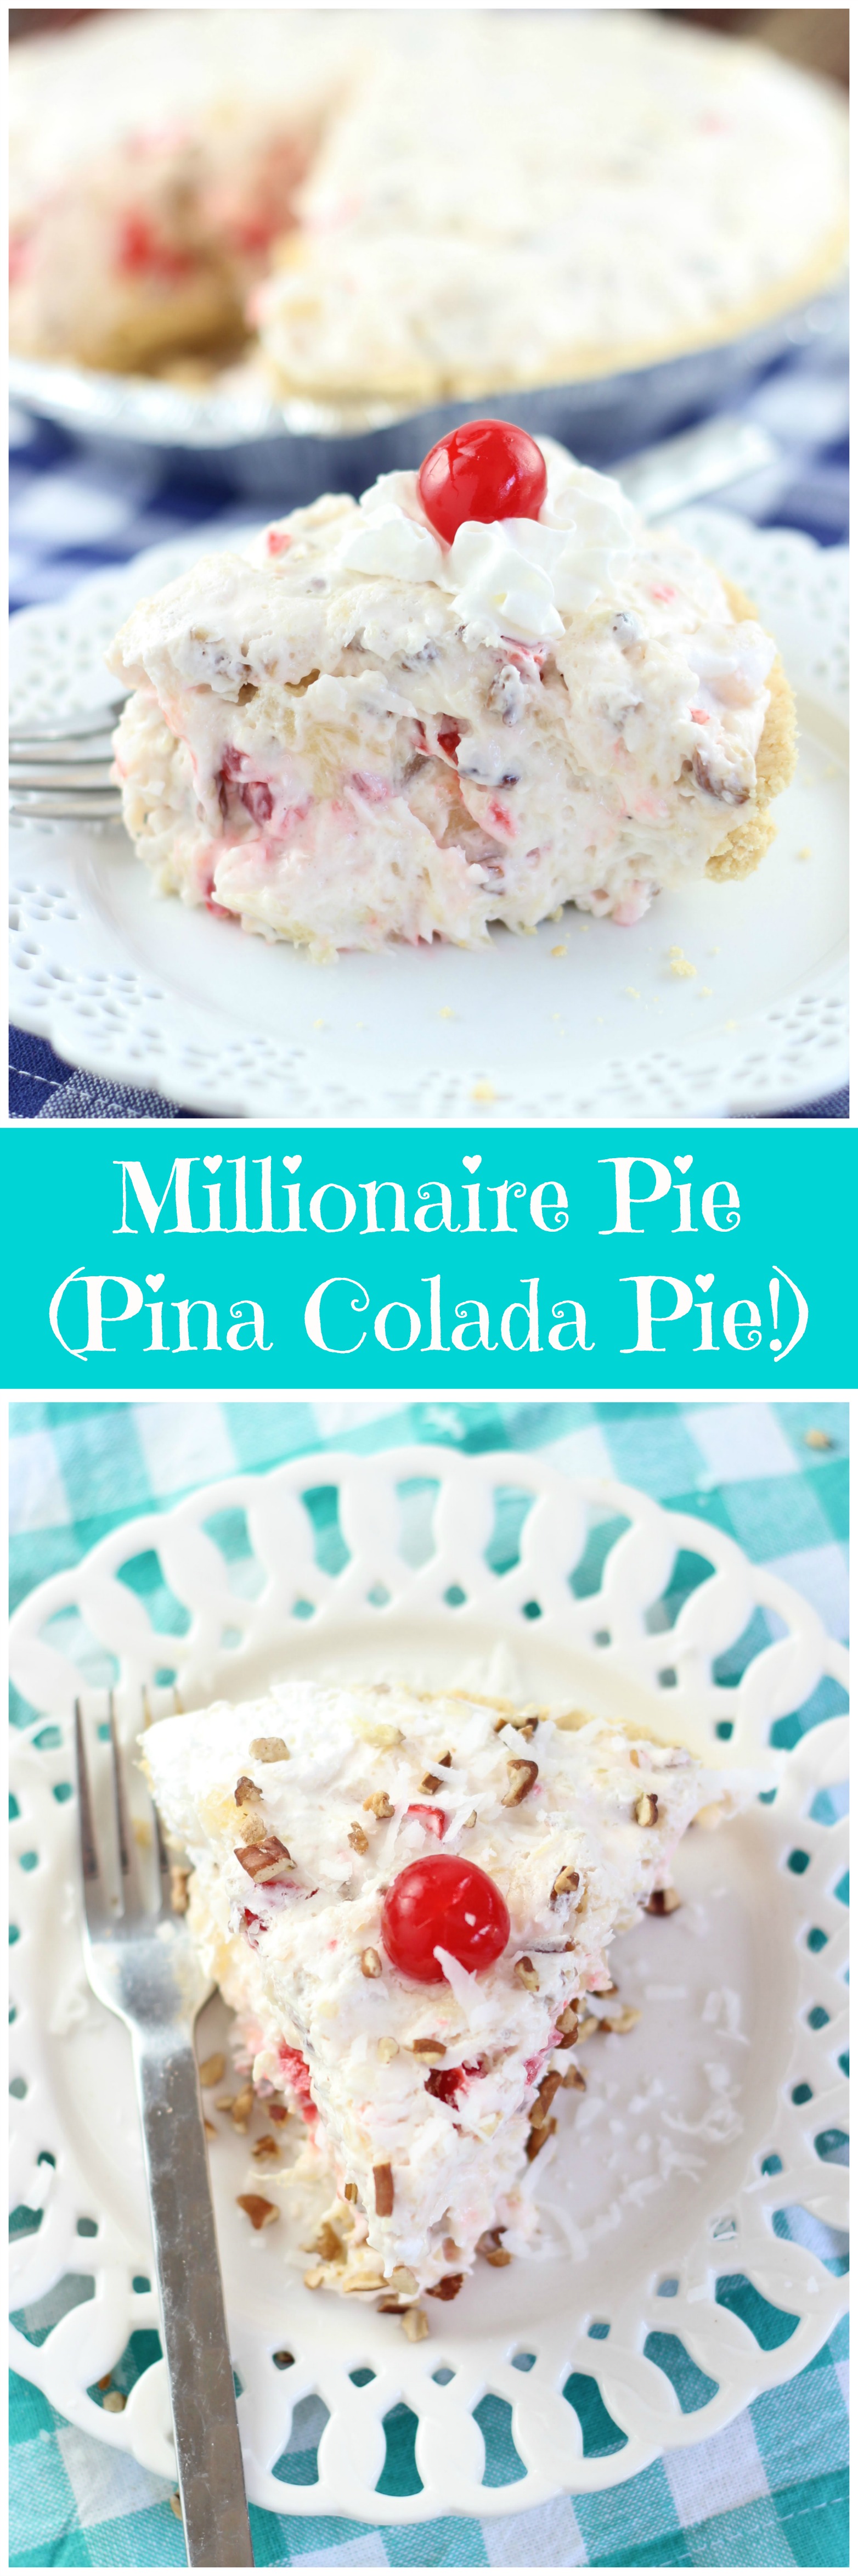 Millionaire Pie (Pina Colada Pie)